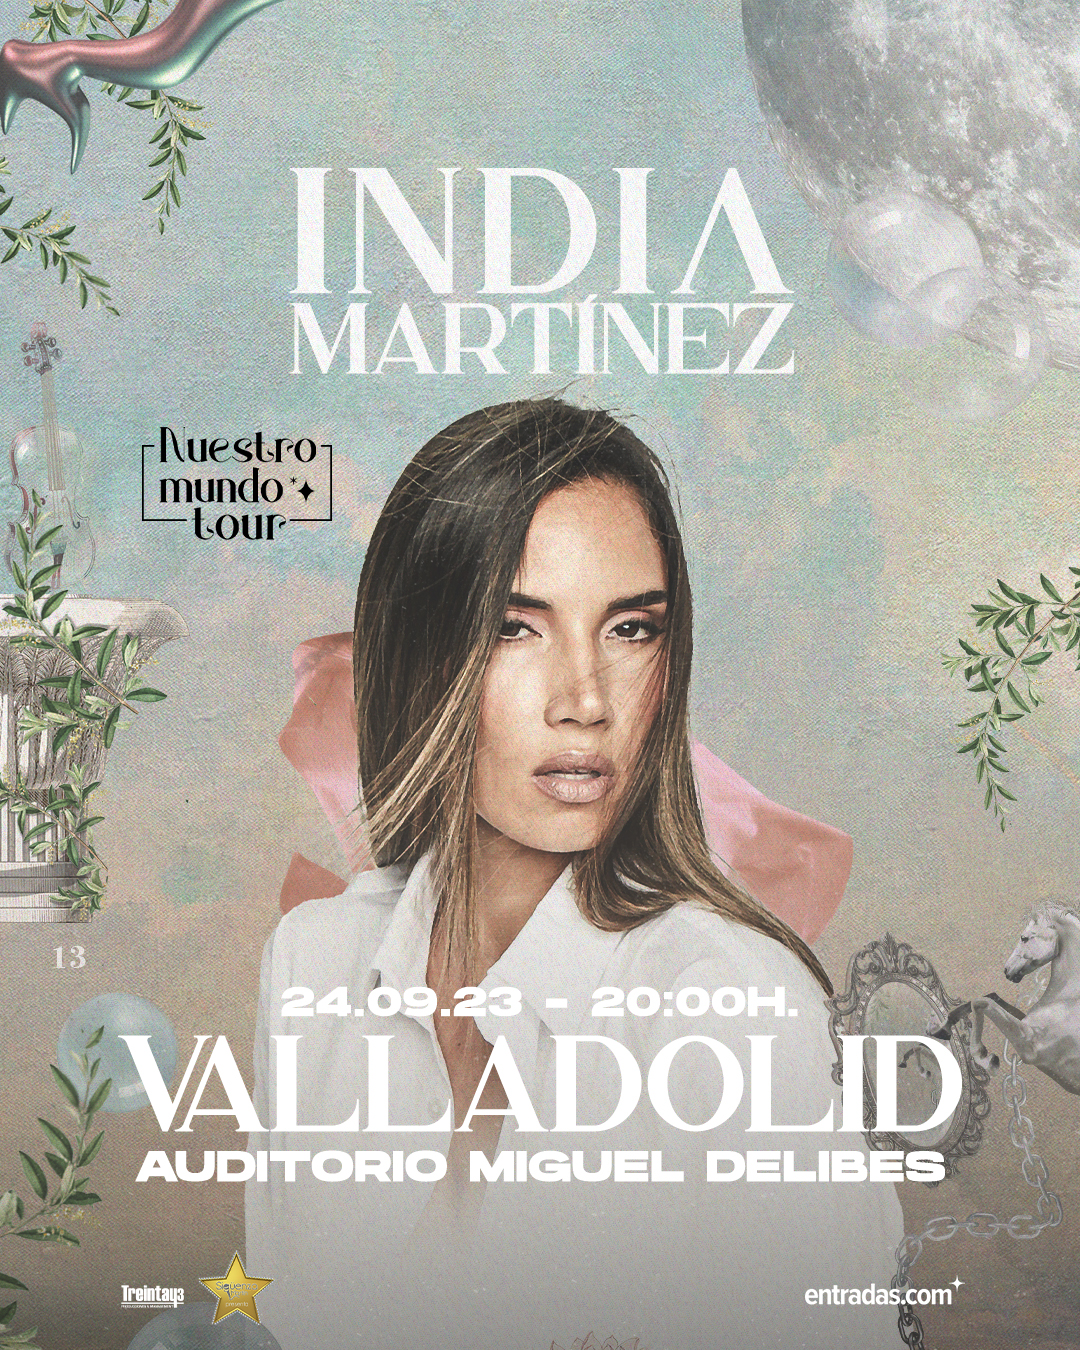 India Martínez – Valladolid